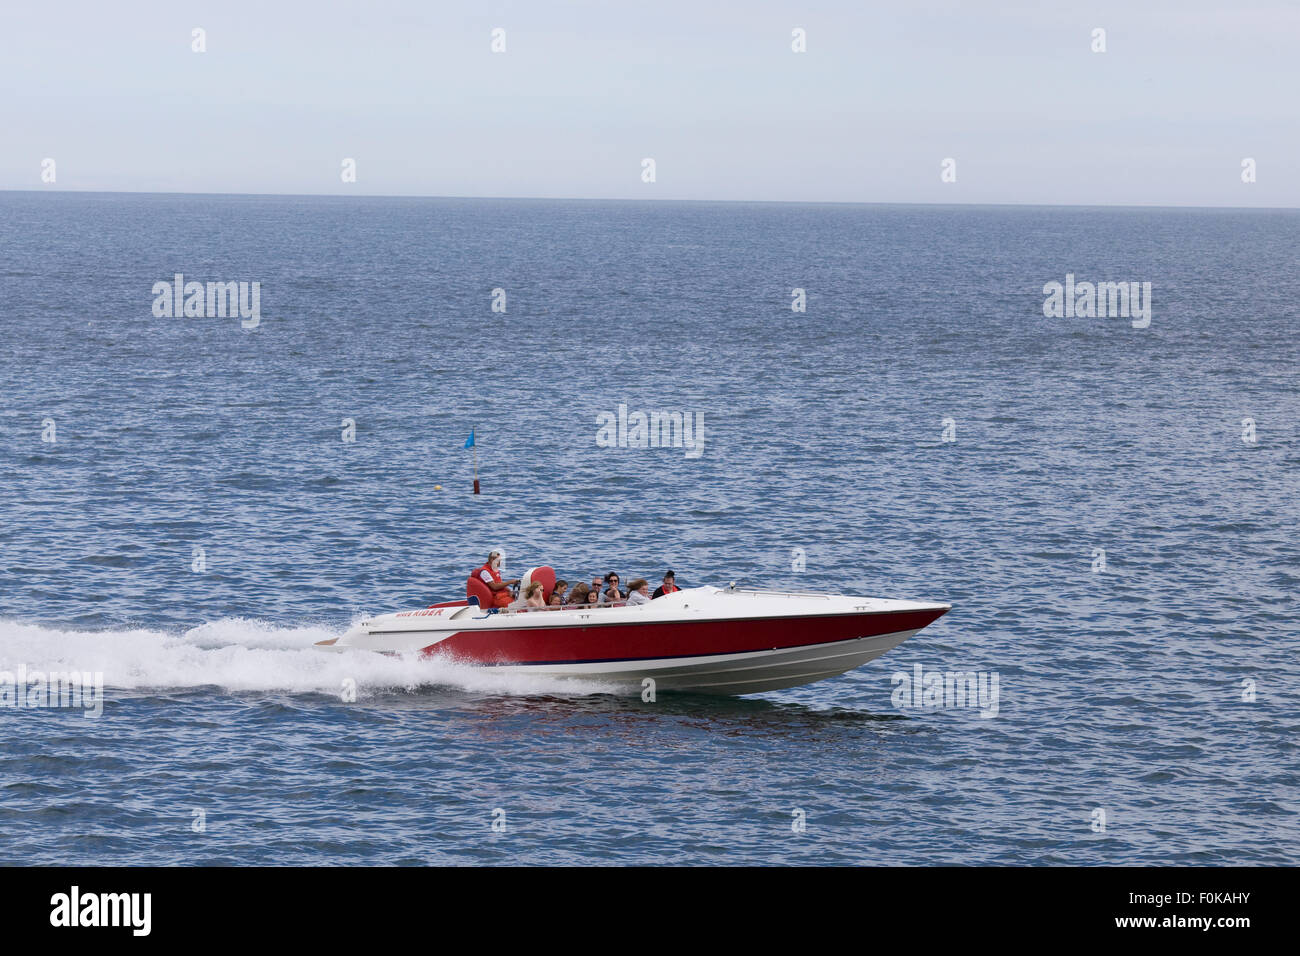 Passenger speed boat speeding across the ocean Stock Photo